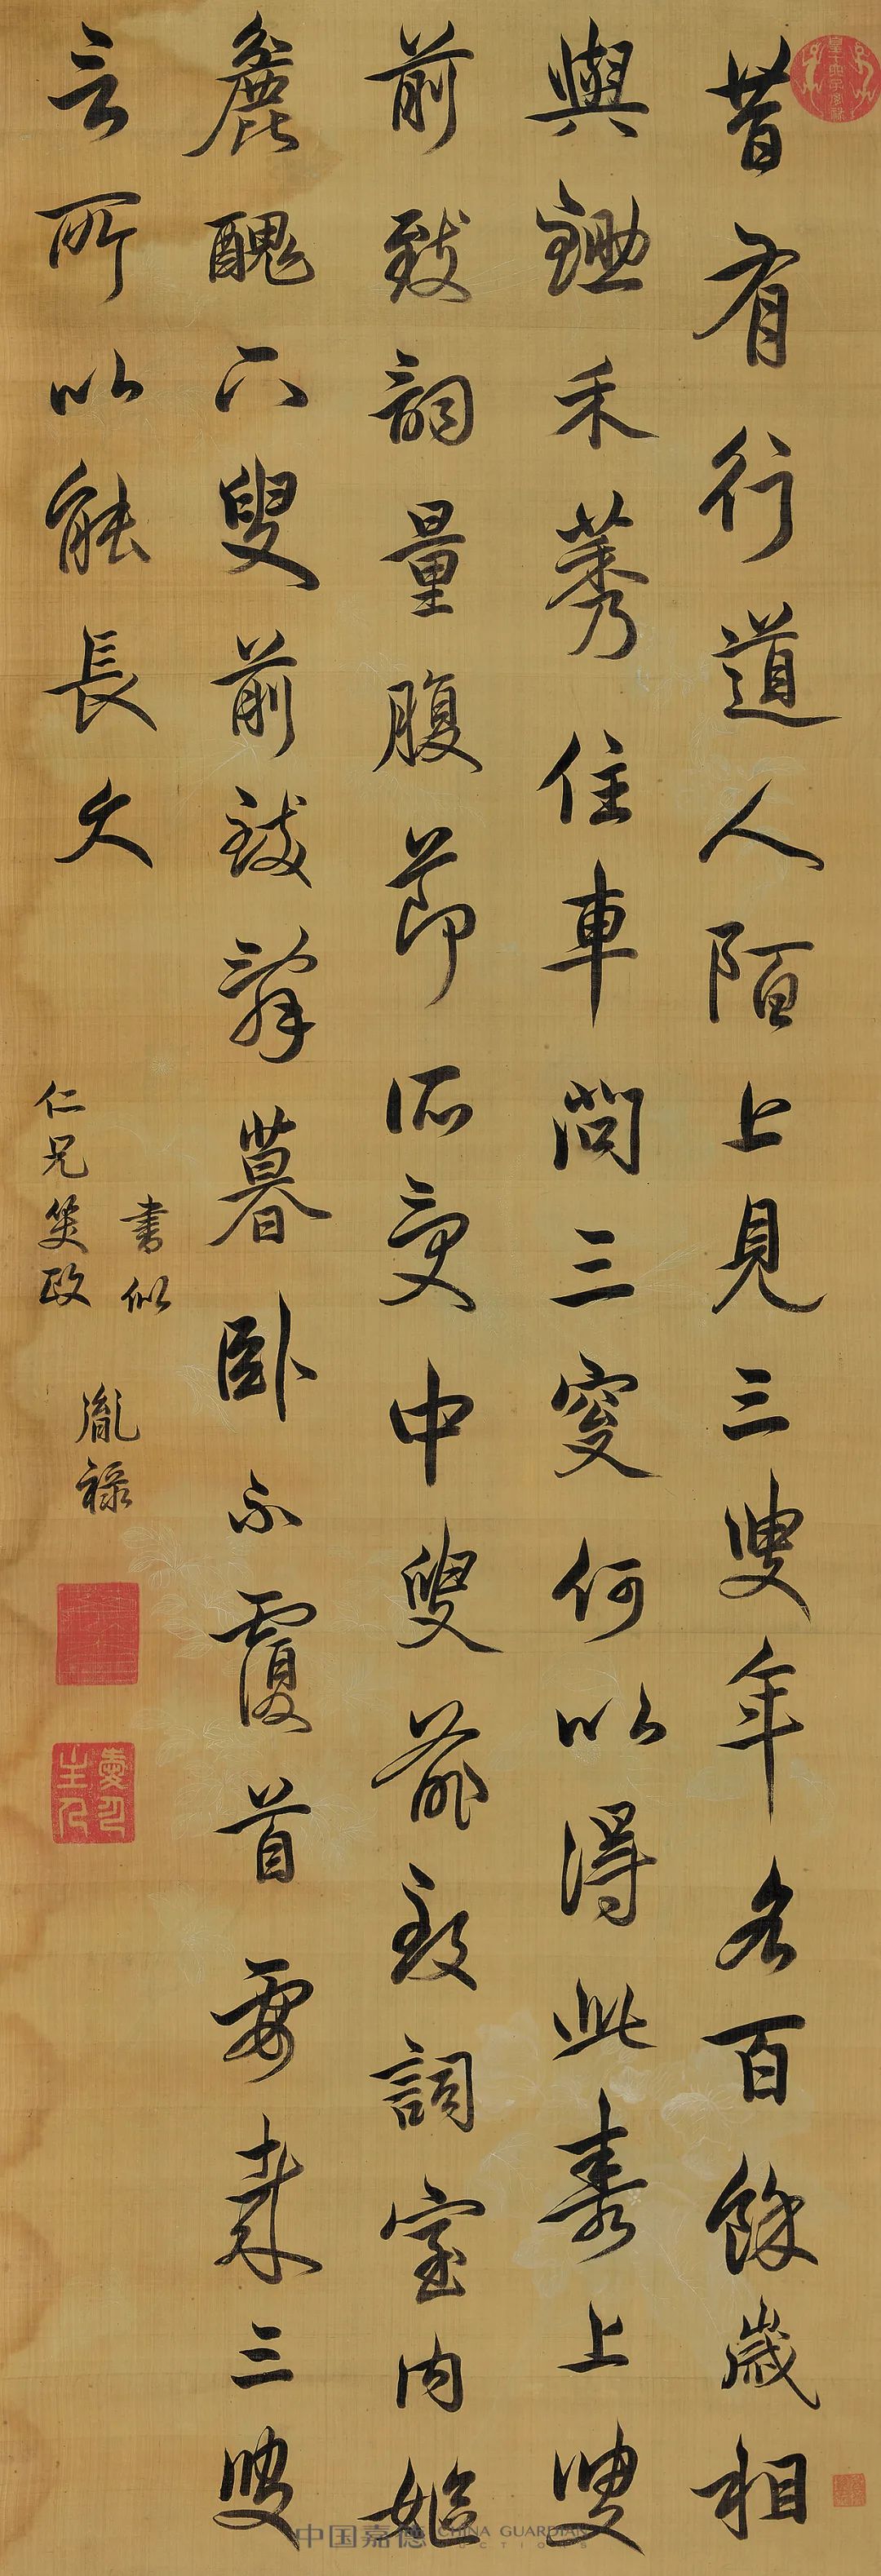 中国嘉德2021春拍| 《中国古代书画》日场书法精品抢先看- 久藏艺术网